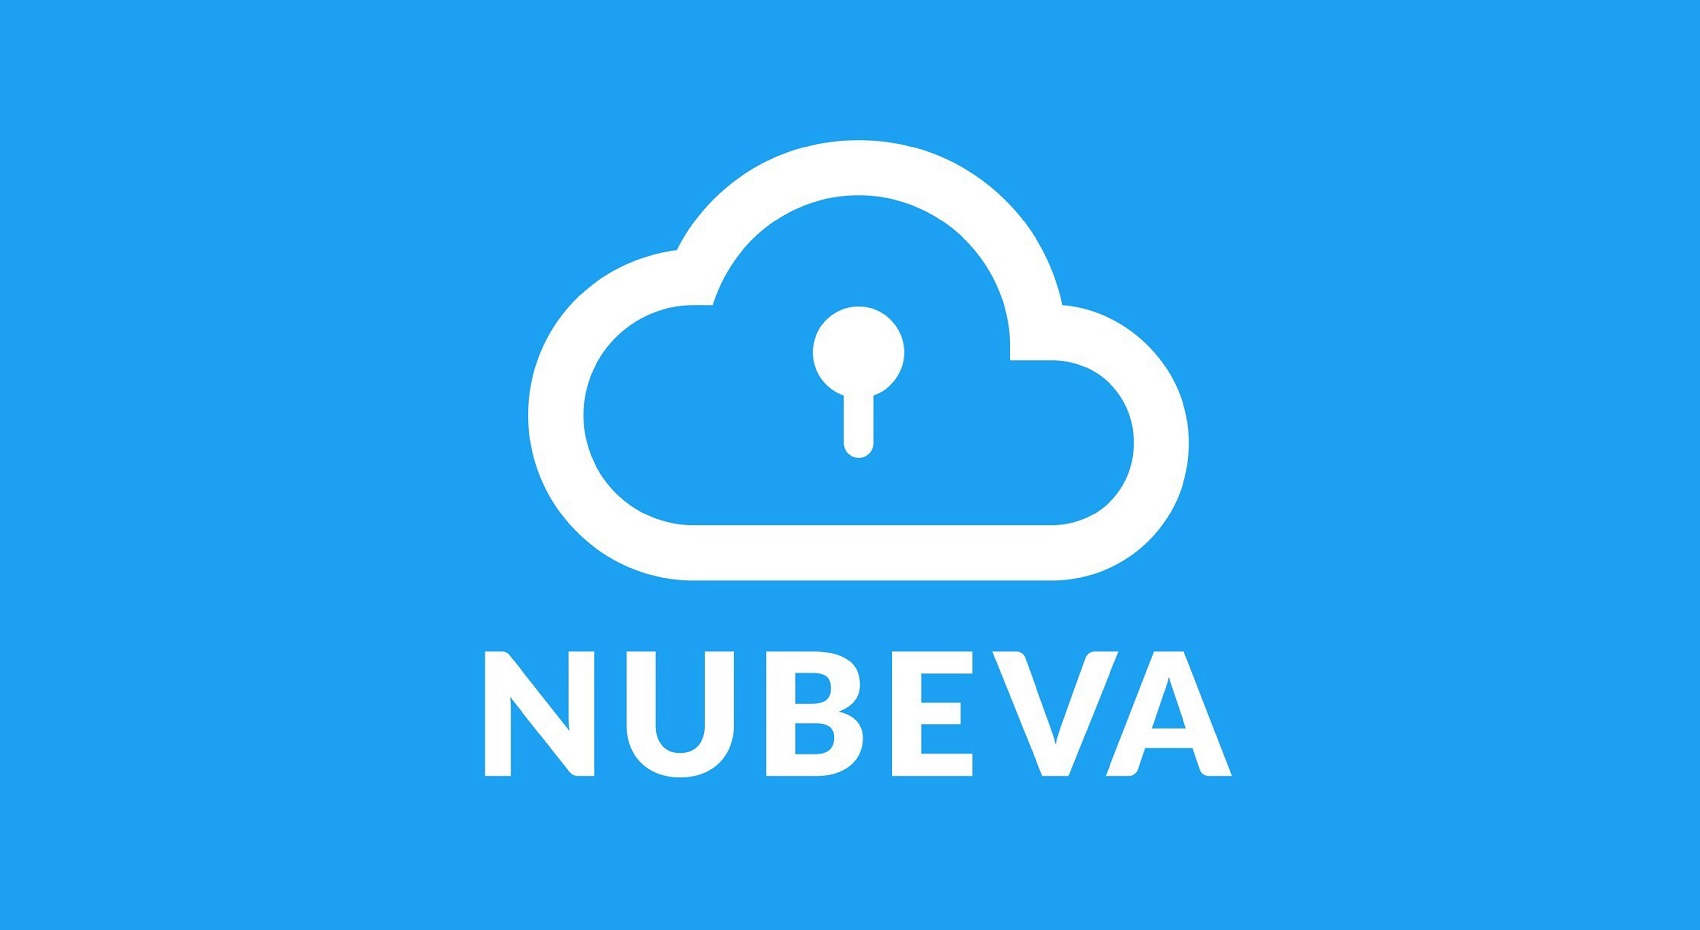 Nubeva Named A Globa